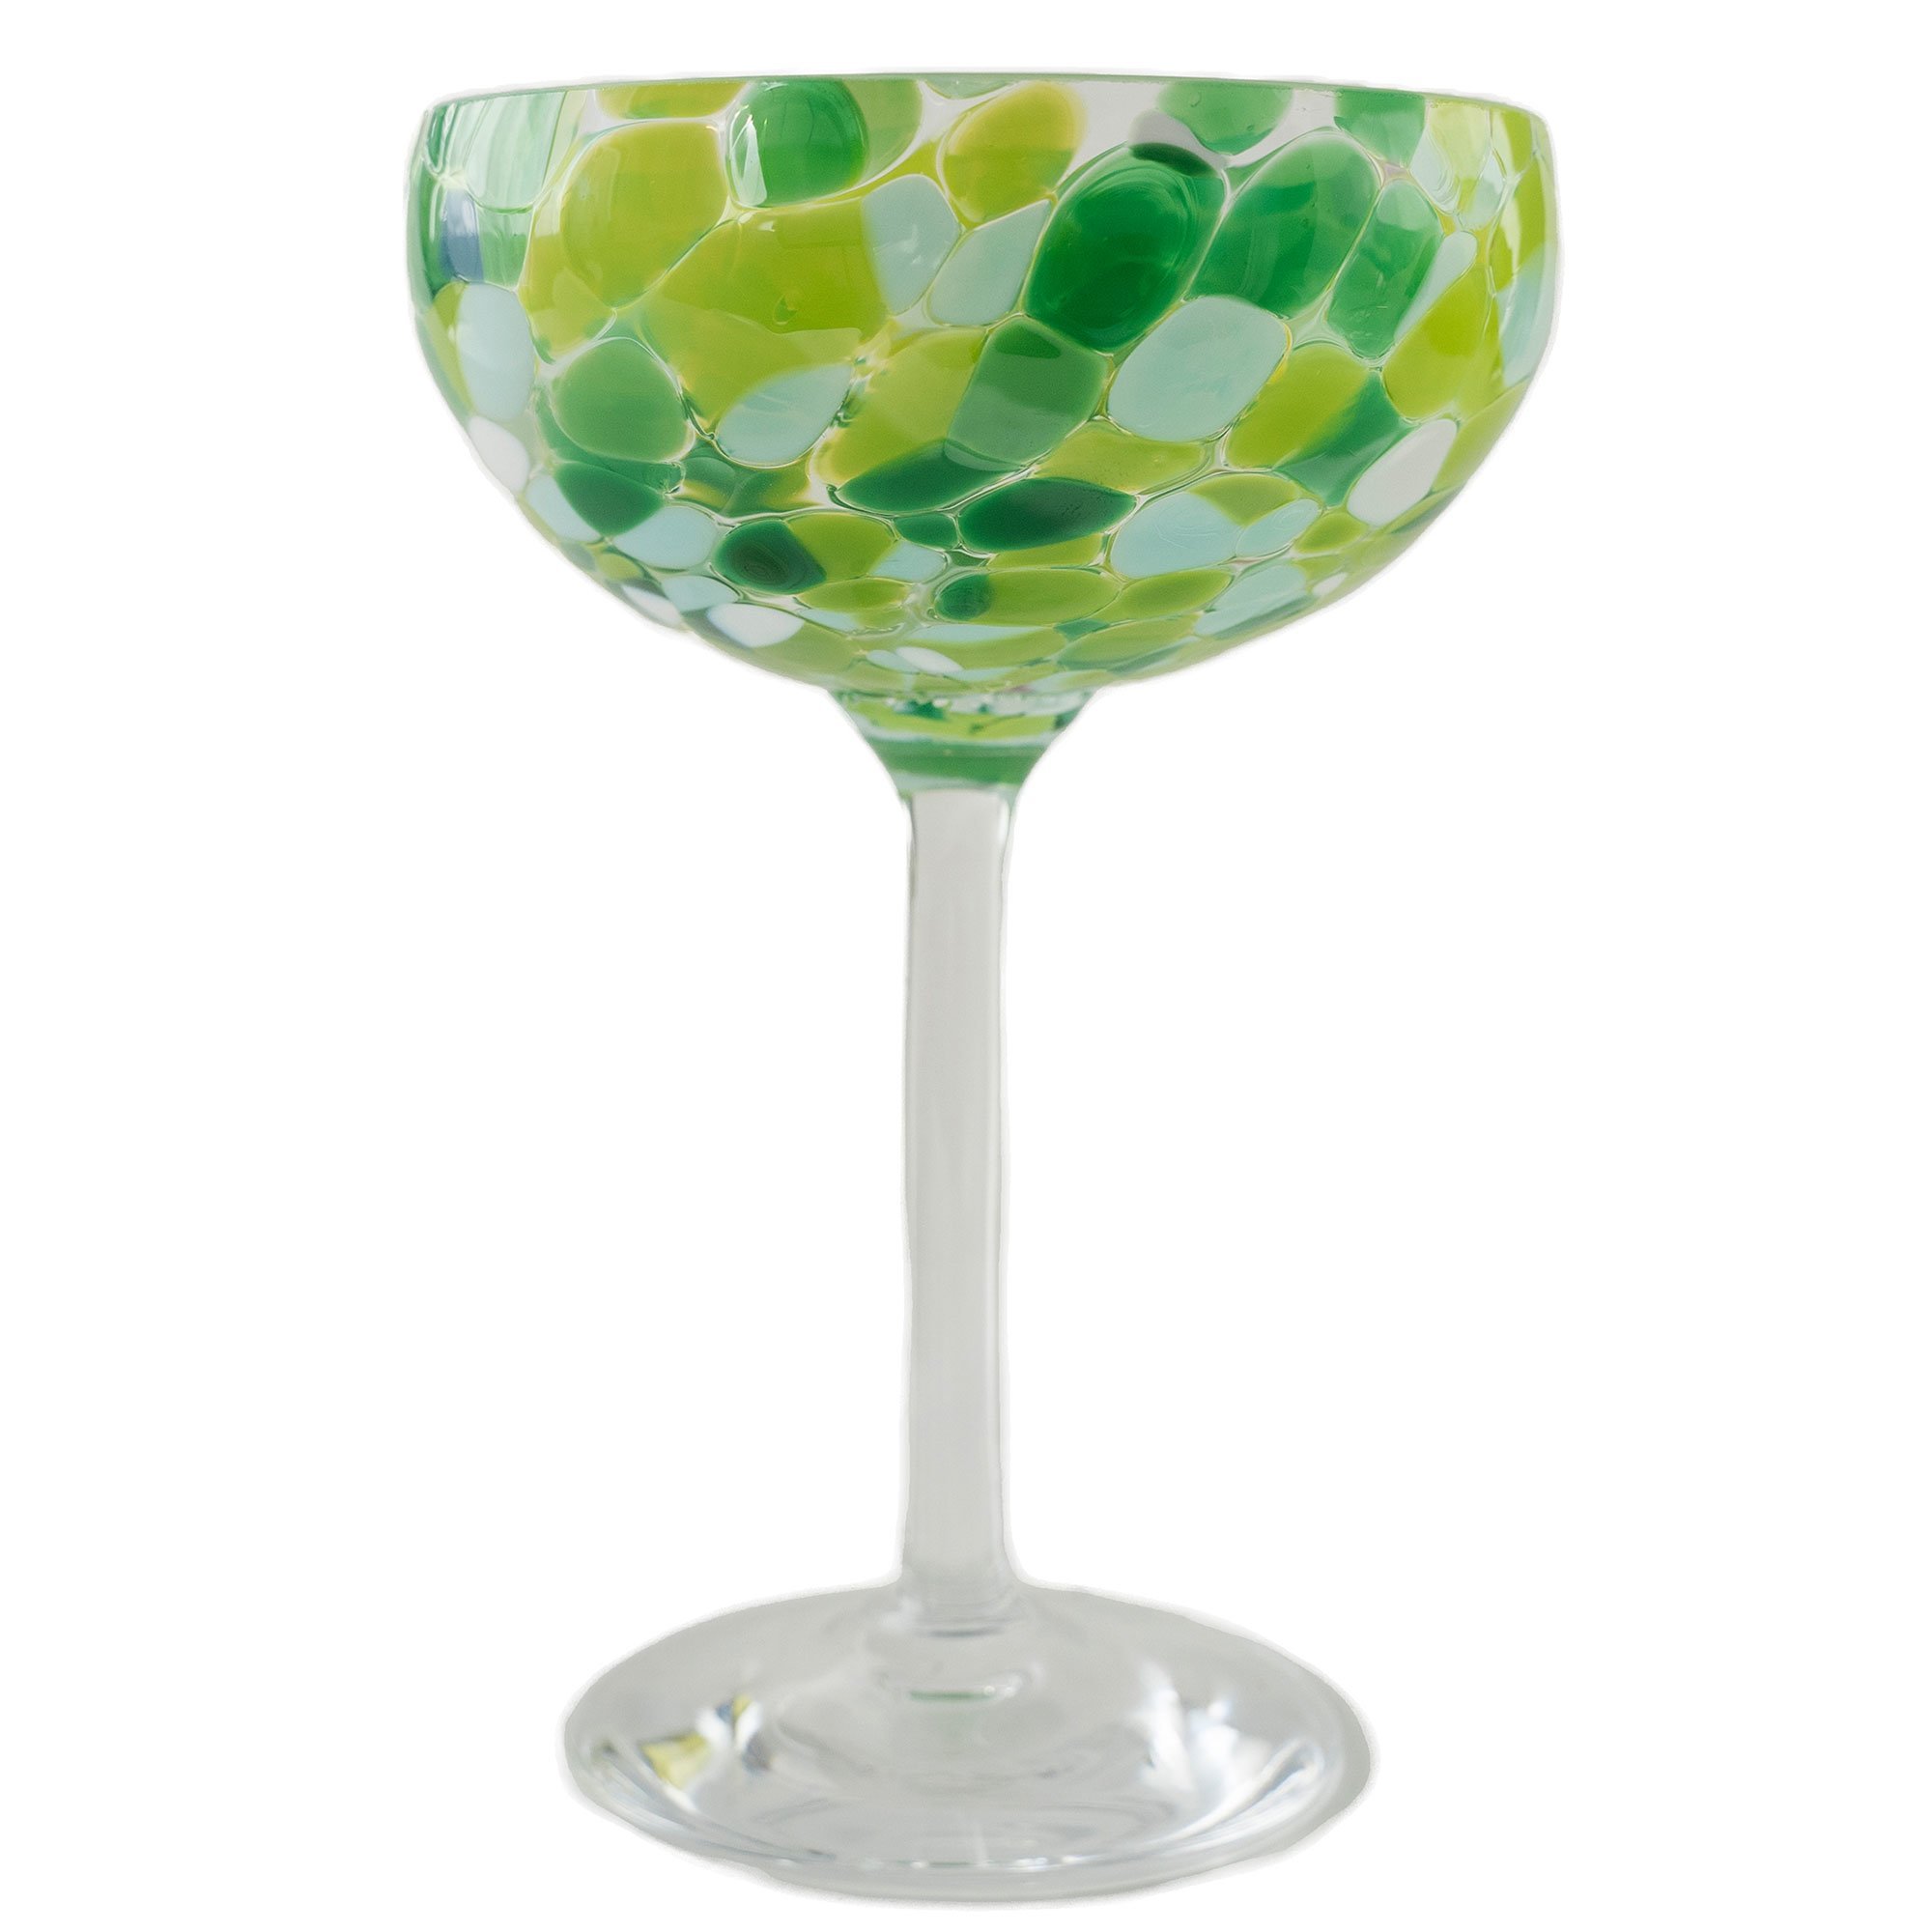 Magnor Swirl champagneglas 22 cl grøn